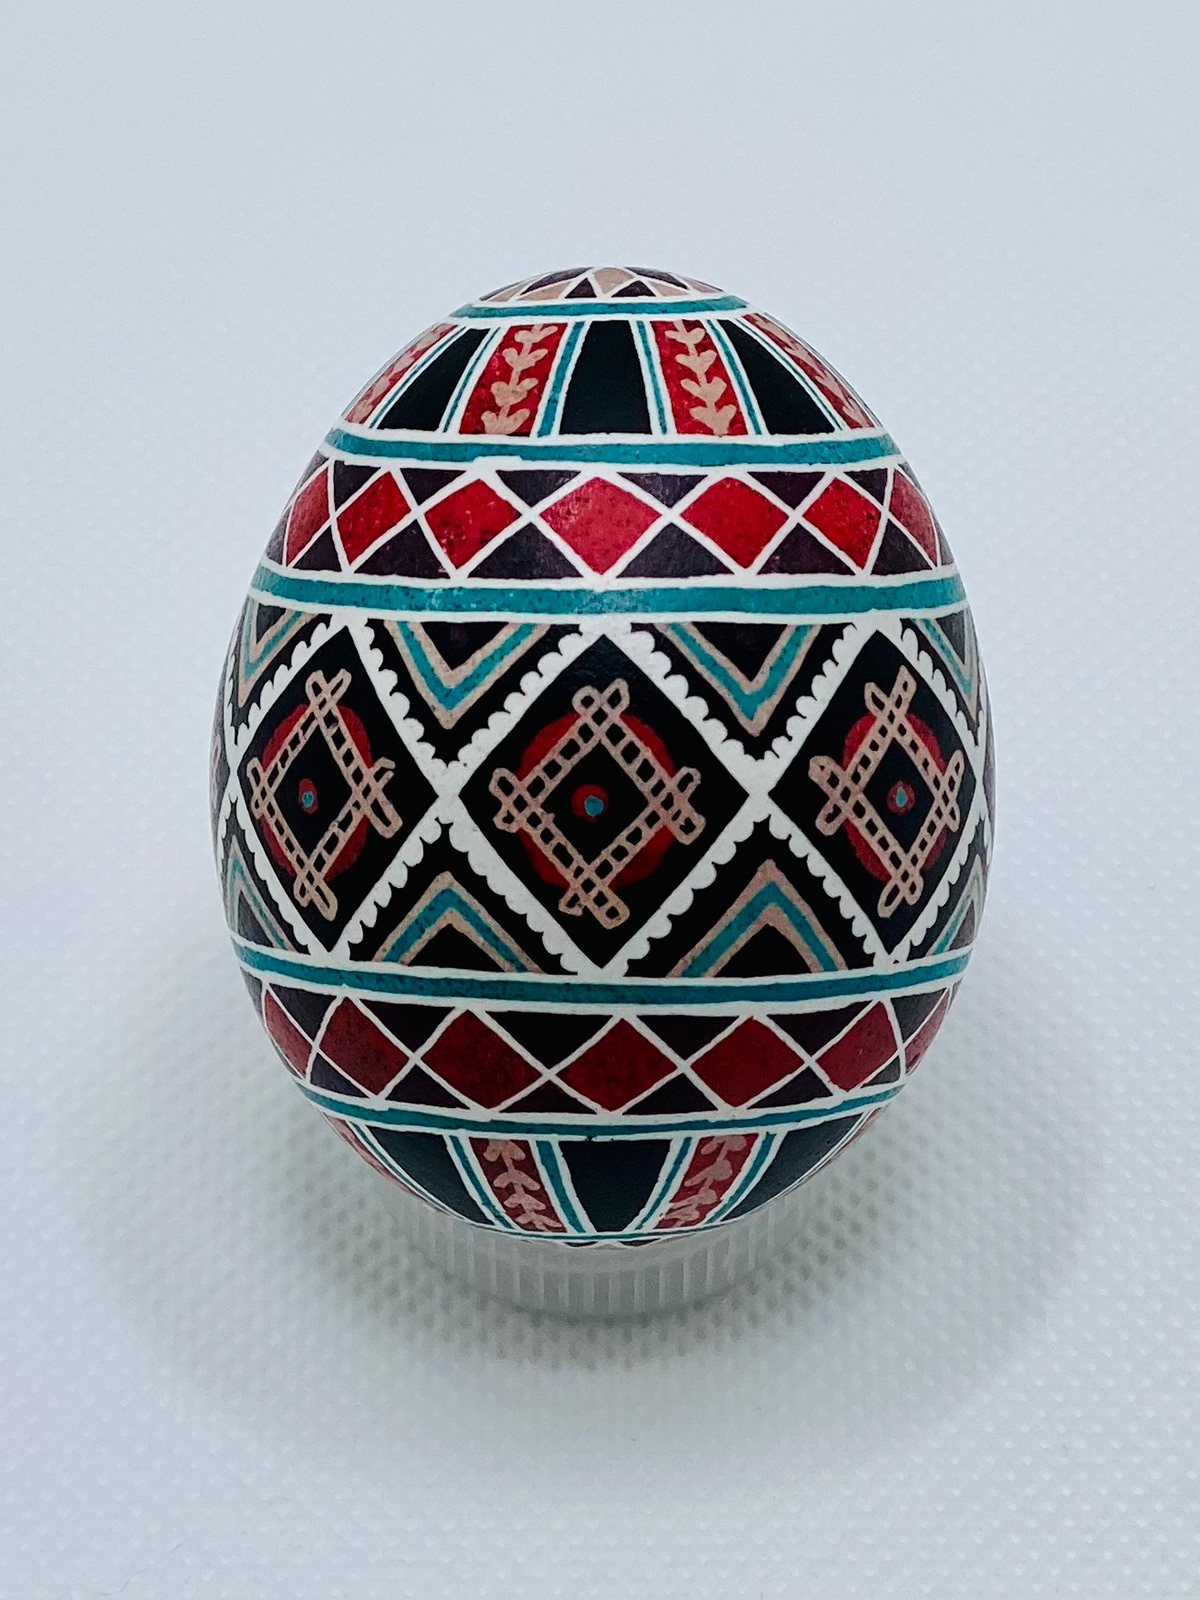 art batsnail pysanky Ukrainian eggs